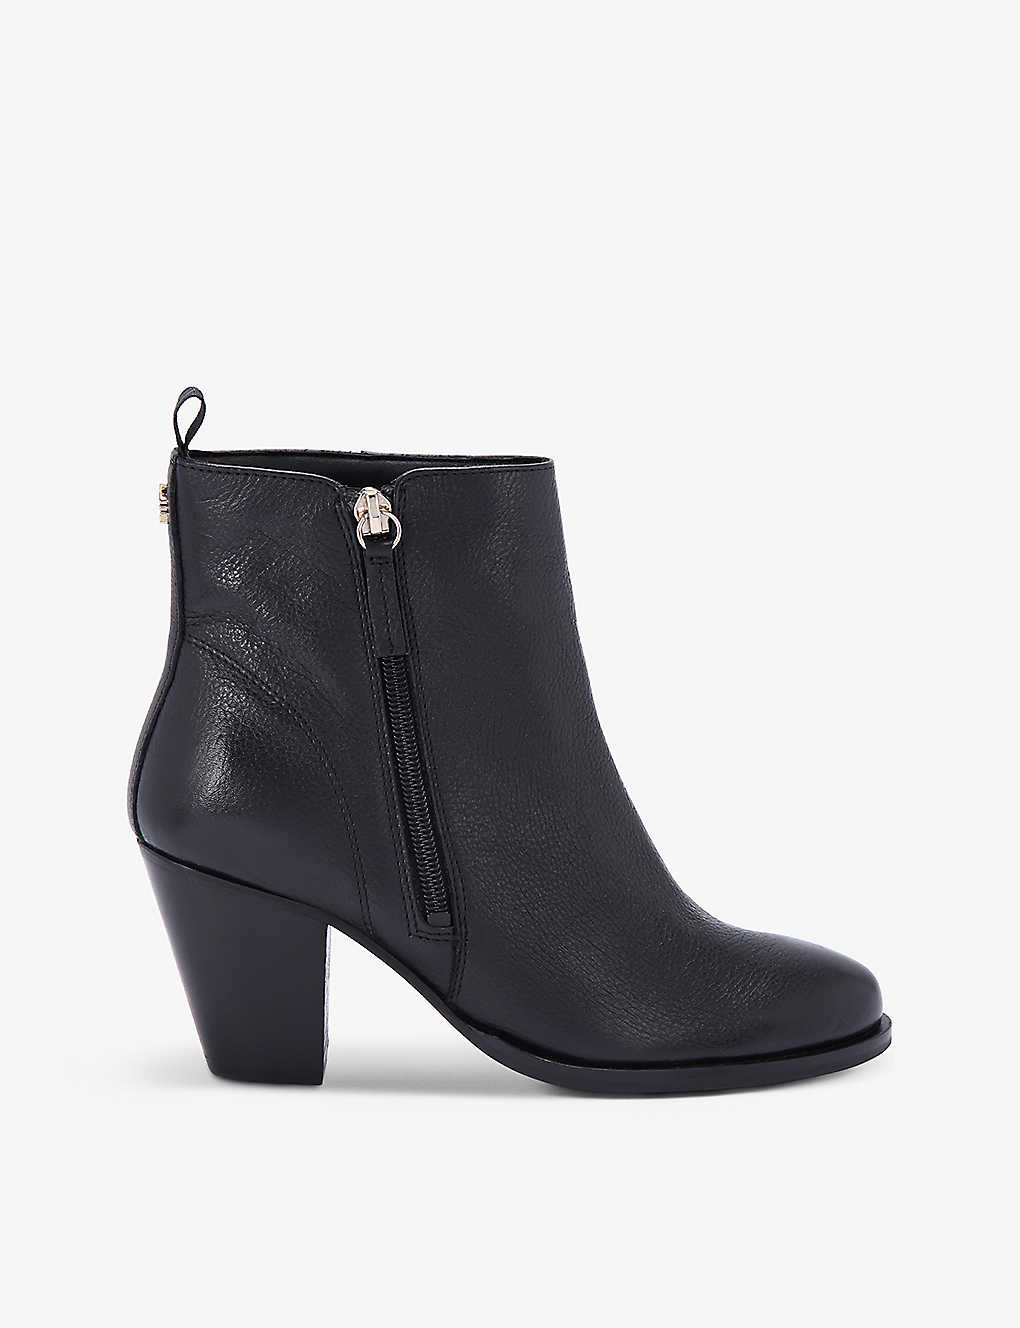 Shop Kg Kurt Geiger Women's Black Tame Logo-embellished Faux-leather Heeled Ankle Boots